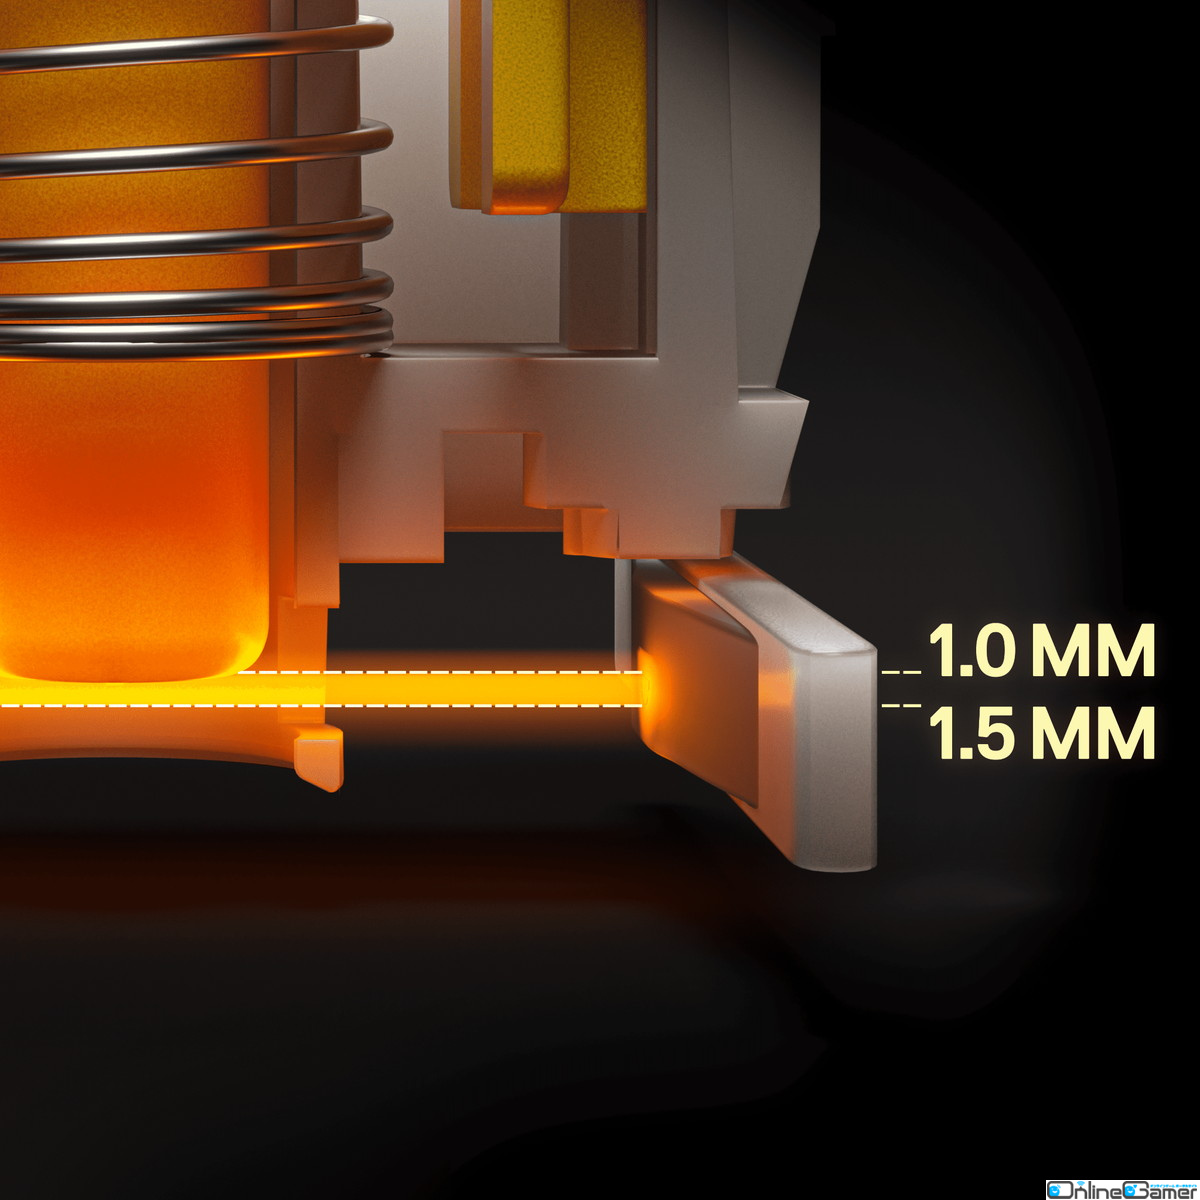 SteelSeriesからゲーミングキーボード「Apex 9 Mini」「Apex 9 TKL」が発売―最短1.0mmアクチエーションと0.2msレスポンスタイムを実現の画像